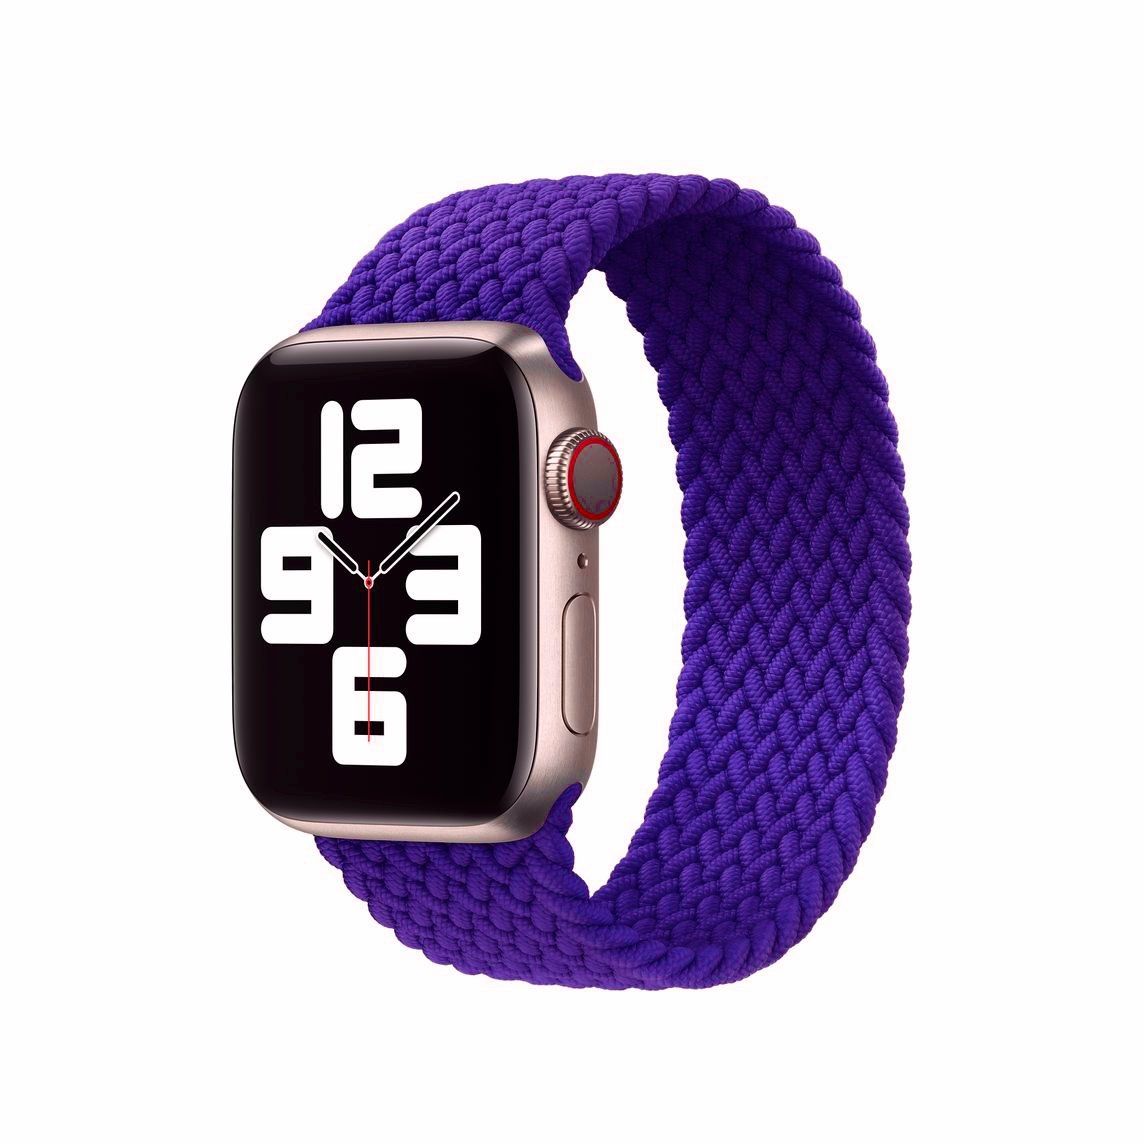 Apple Watchband Braided Loop Purple MOFT 